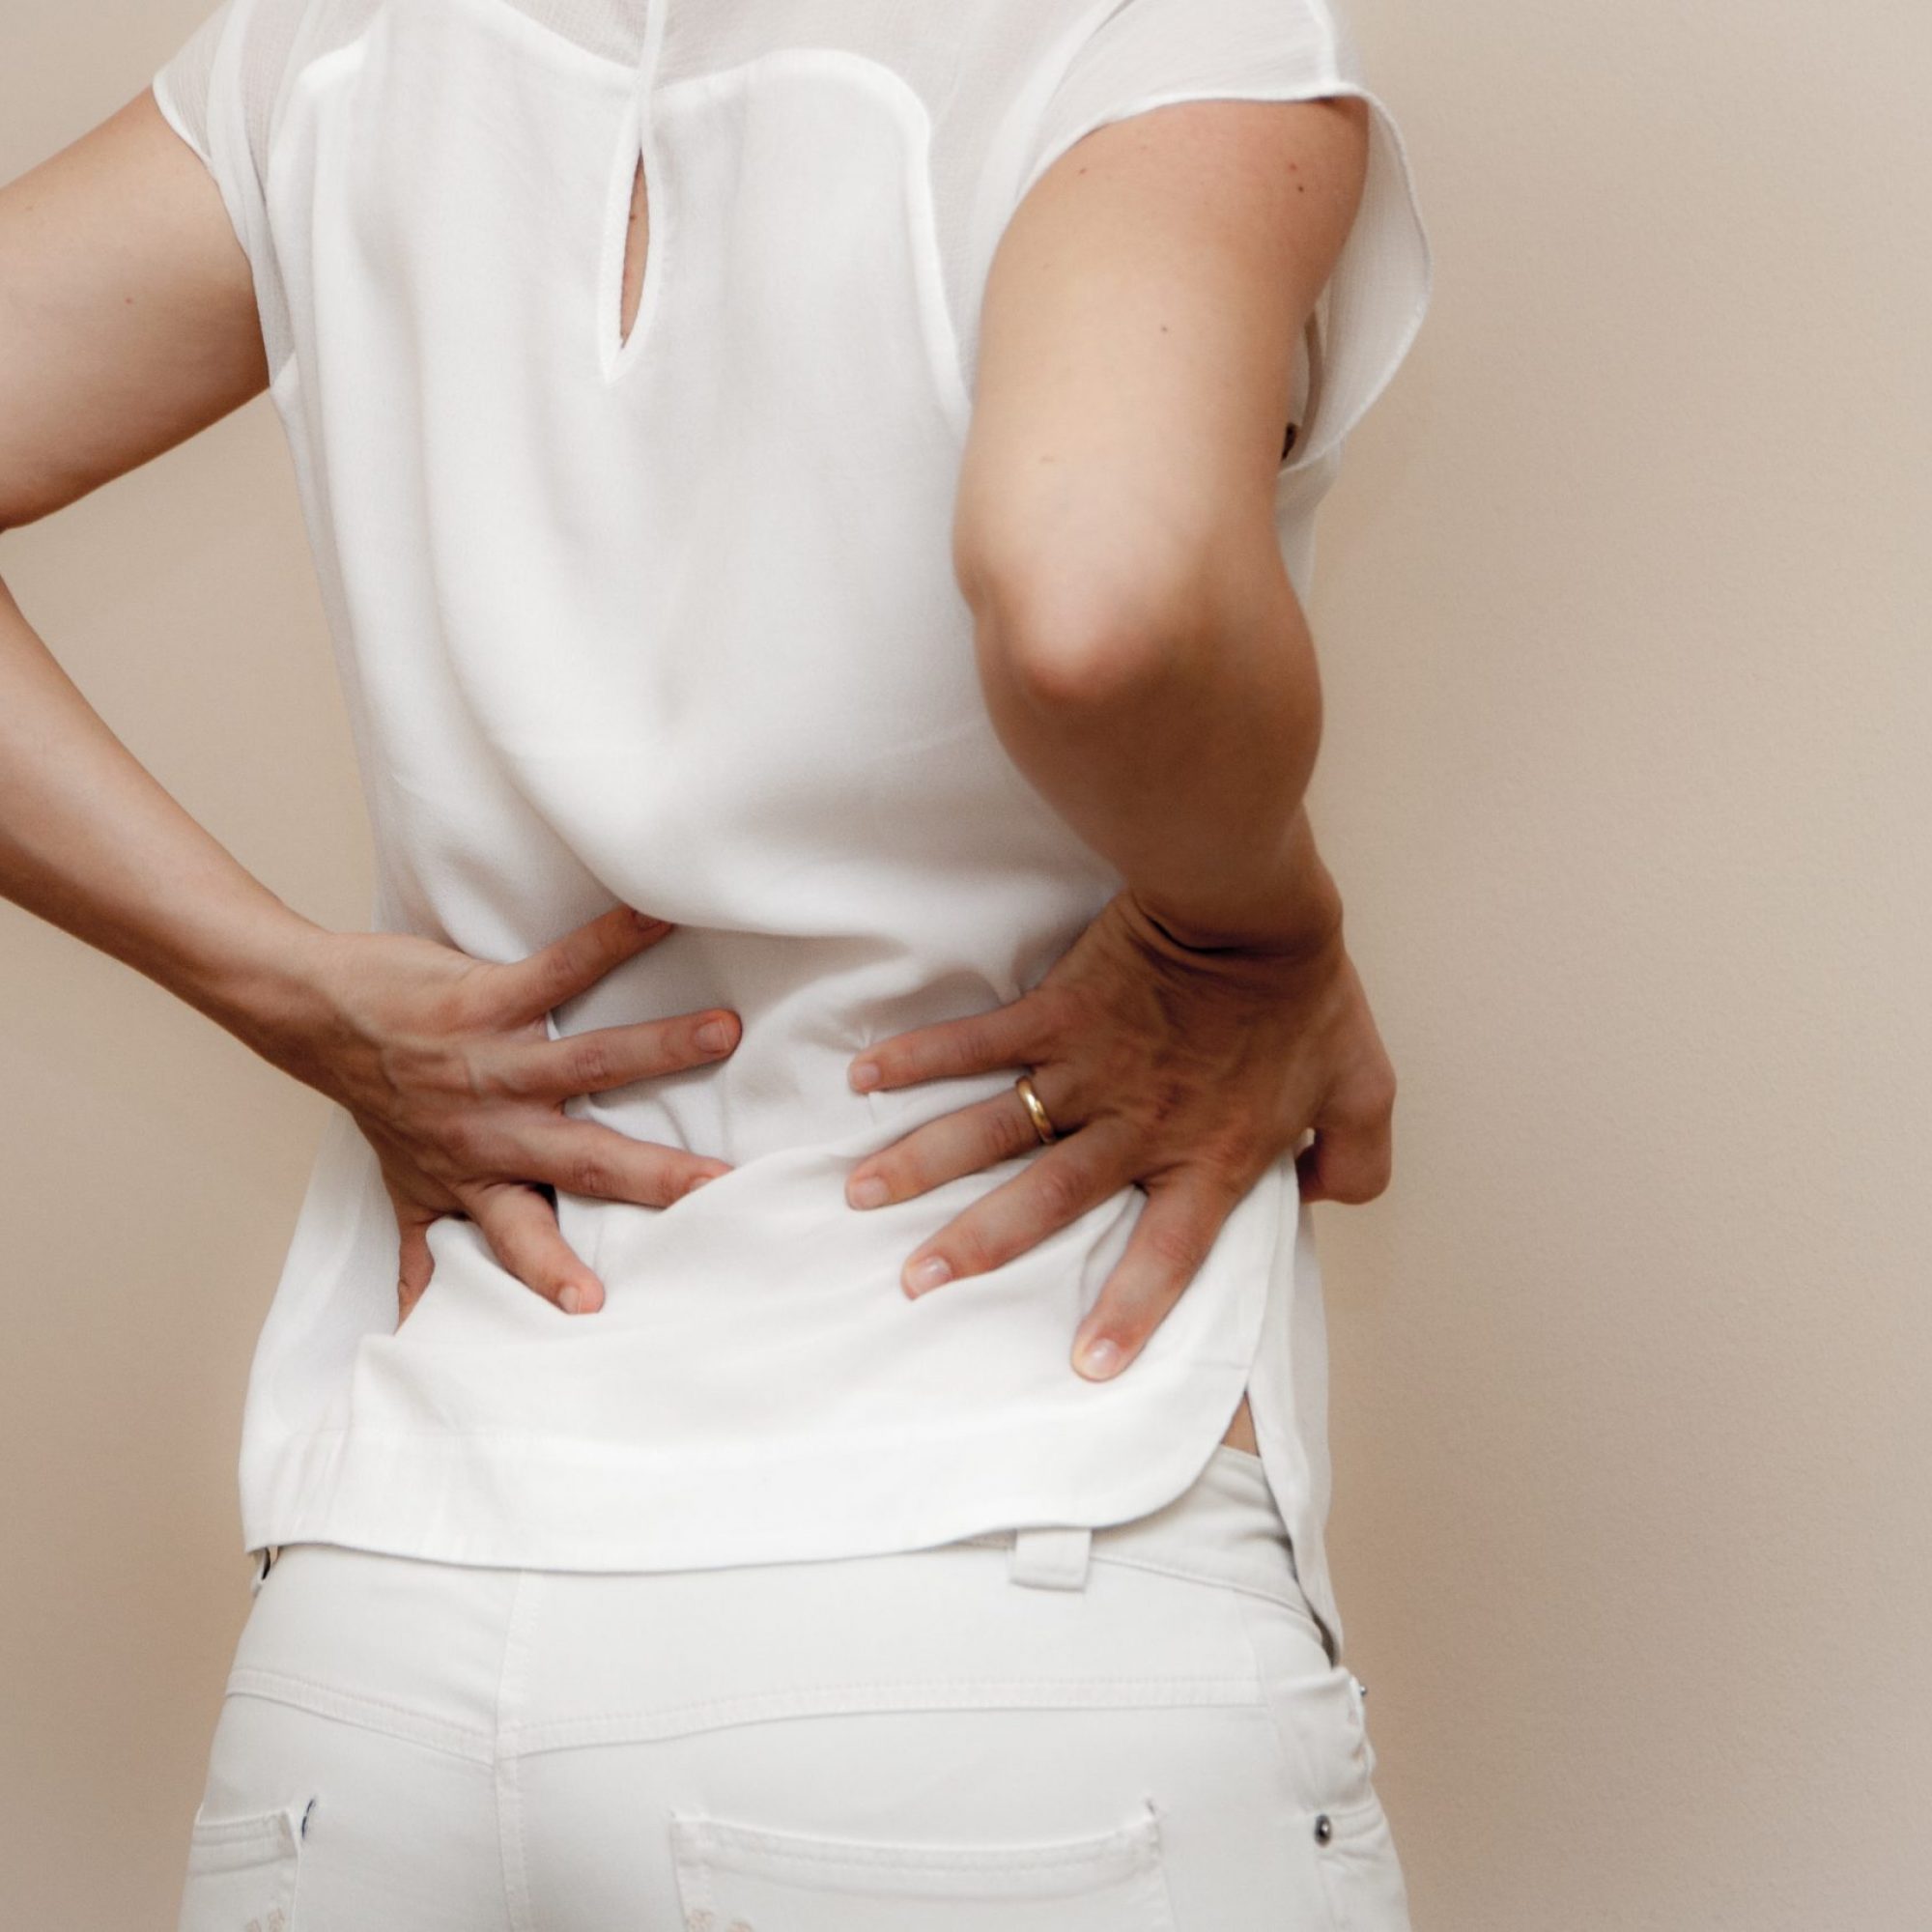 Mehr als zwei drittel aller Menschen erleiden zumindest einmal im Leben Rückenschmerzen.